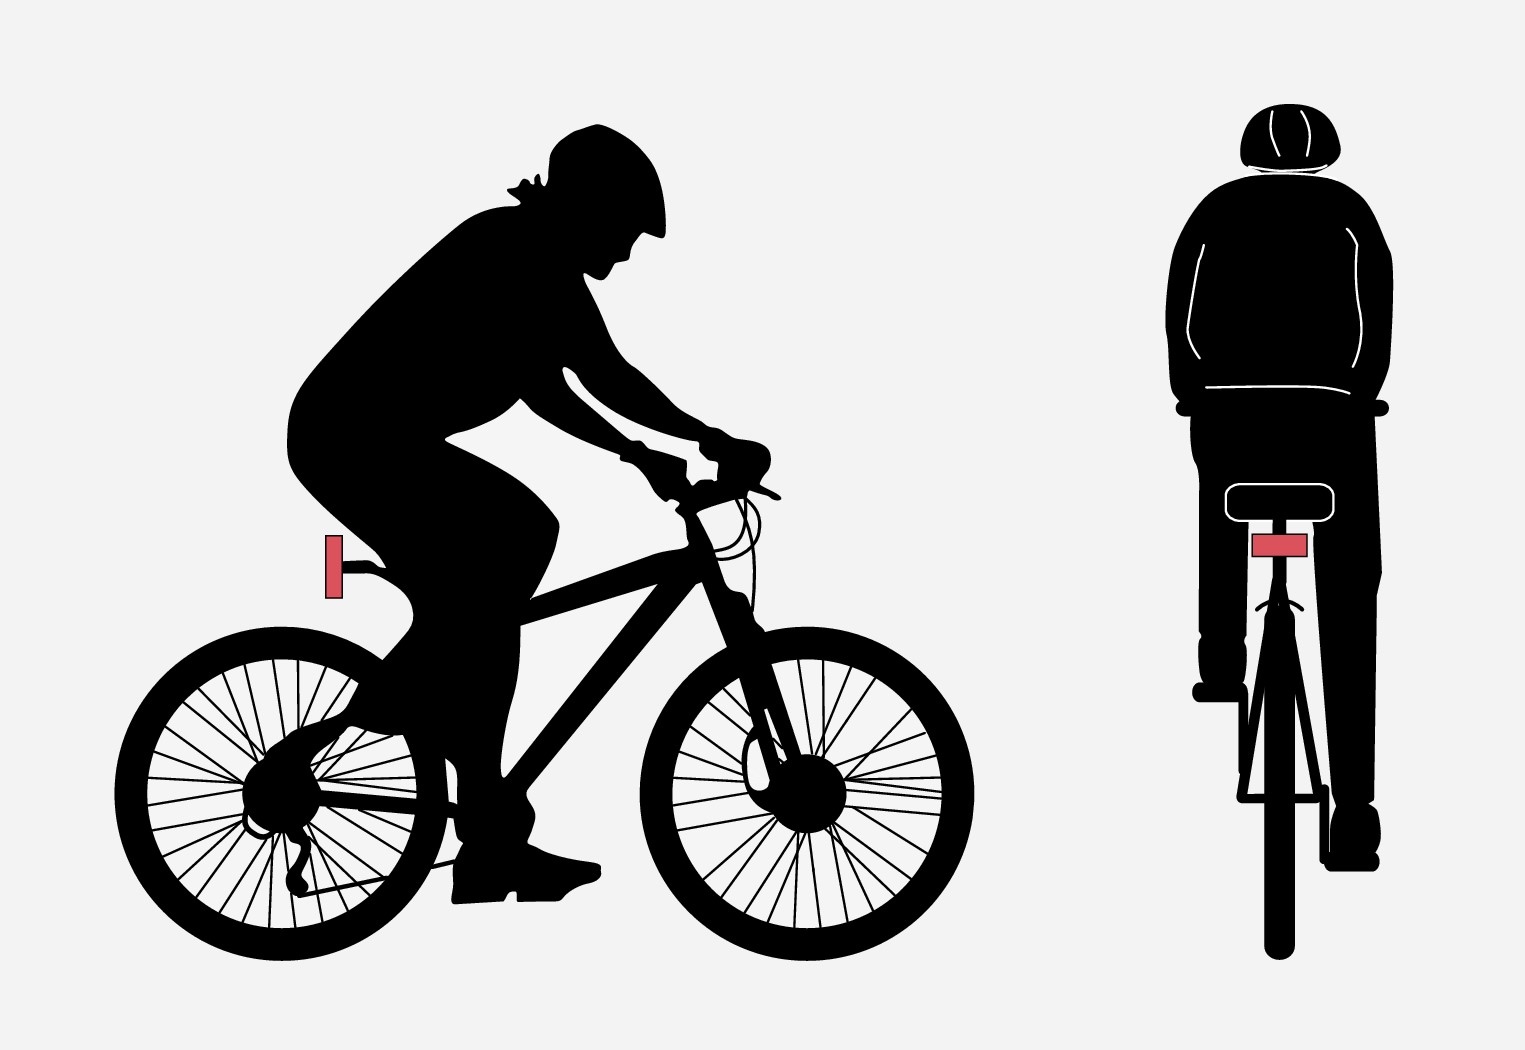 Optimaalne näide: City Safety  tuvastab jalgratturi siis, kui kehakuju ja jalgratta kuju on tervikuna nähtavad.